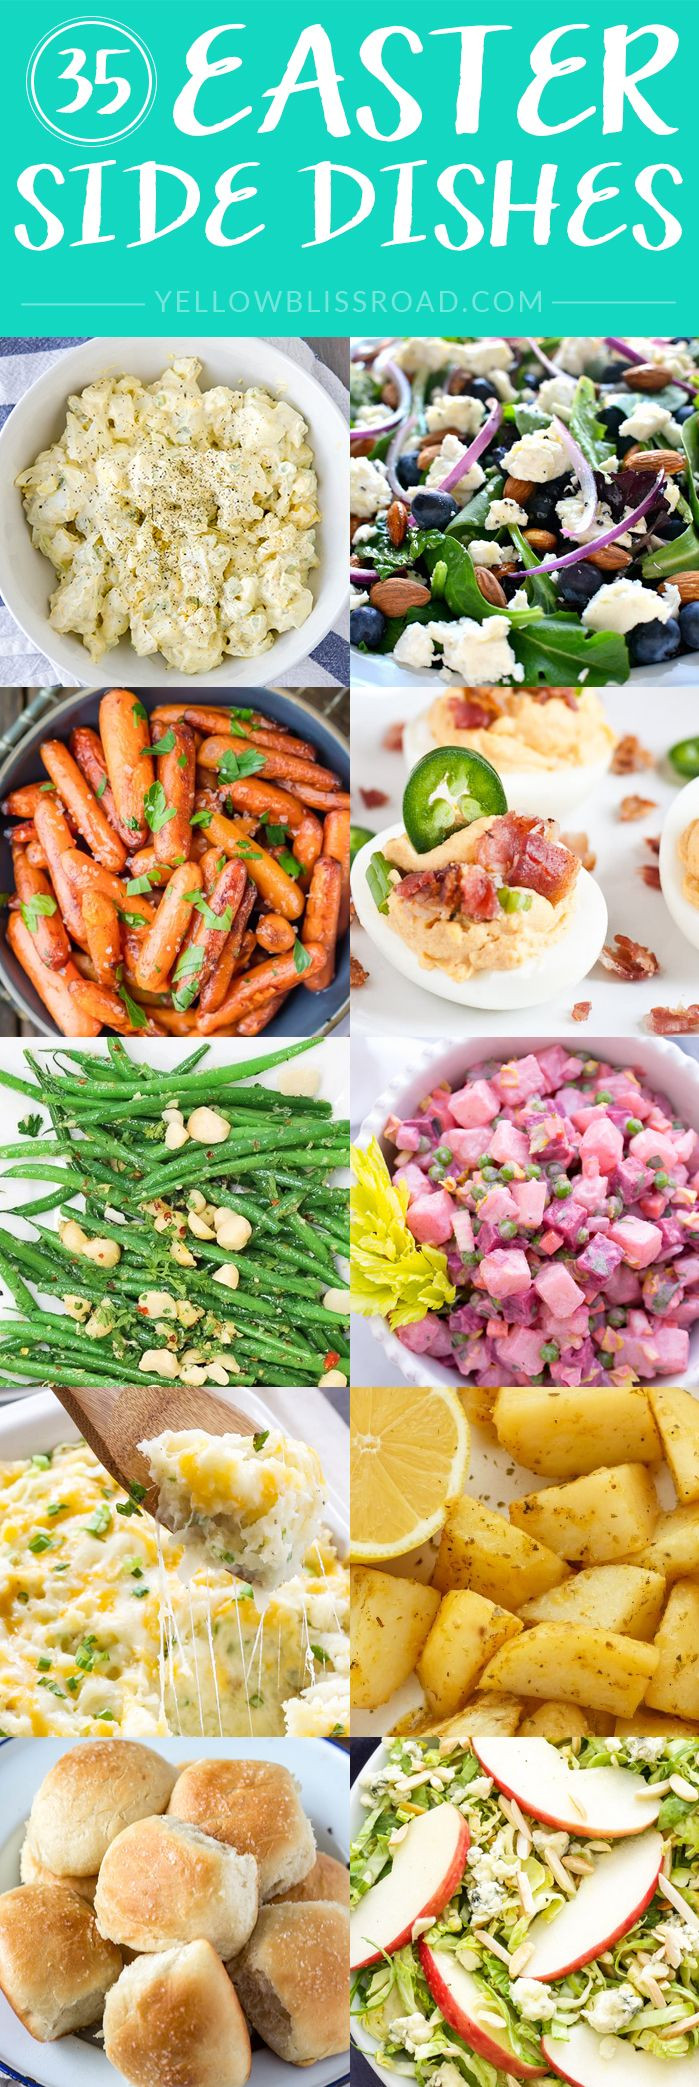 Side Dishes For Easter Ham Dinner
 Best 25 Easter ideas on Pinterest